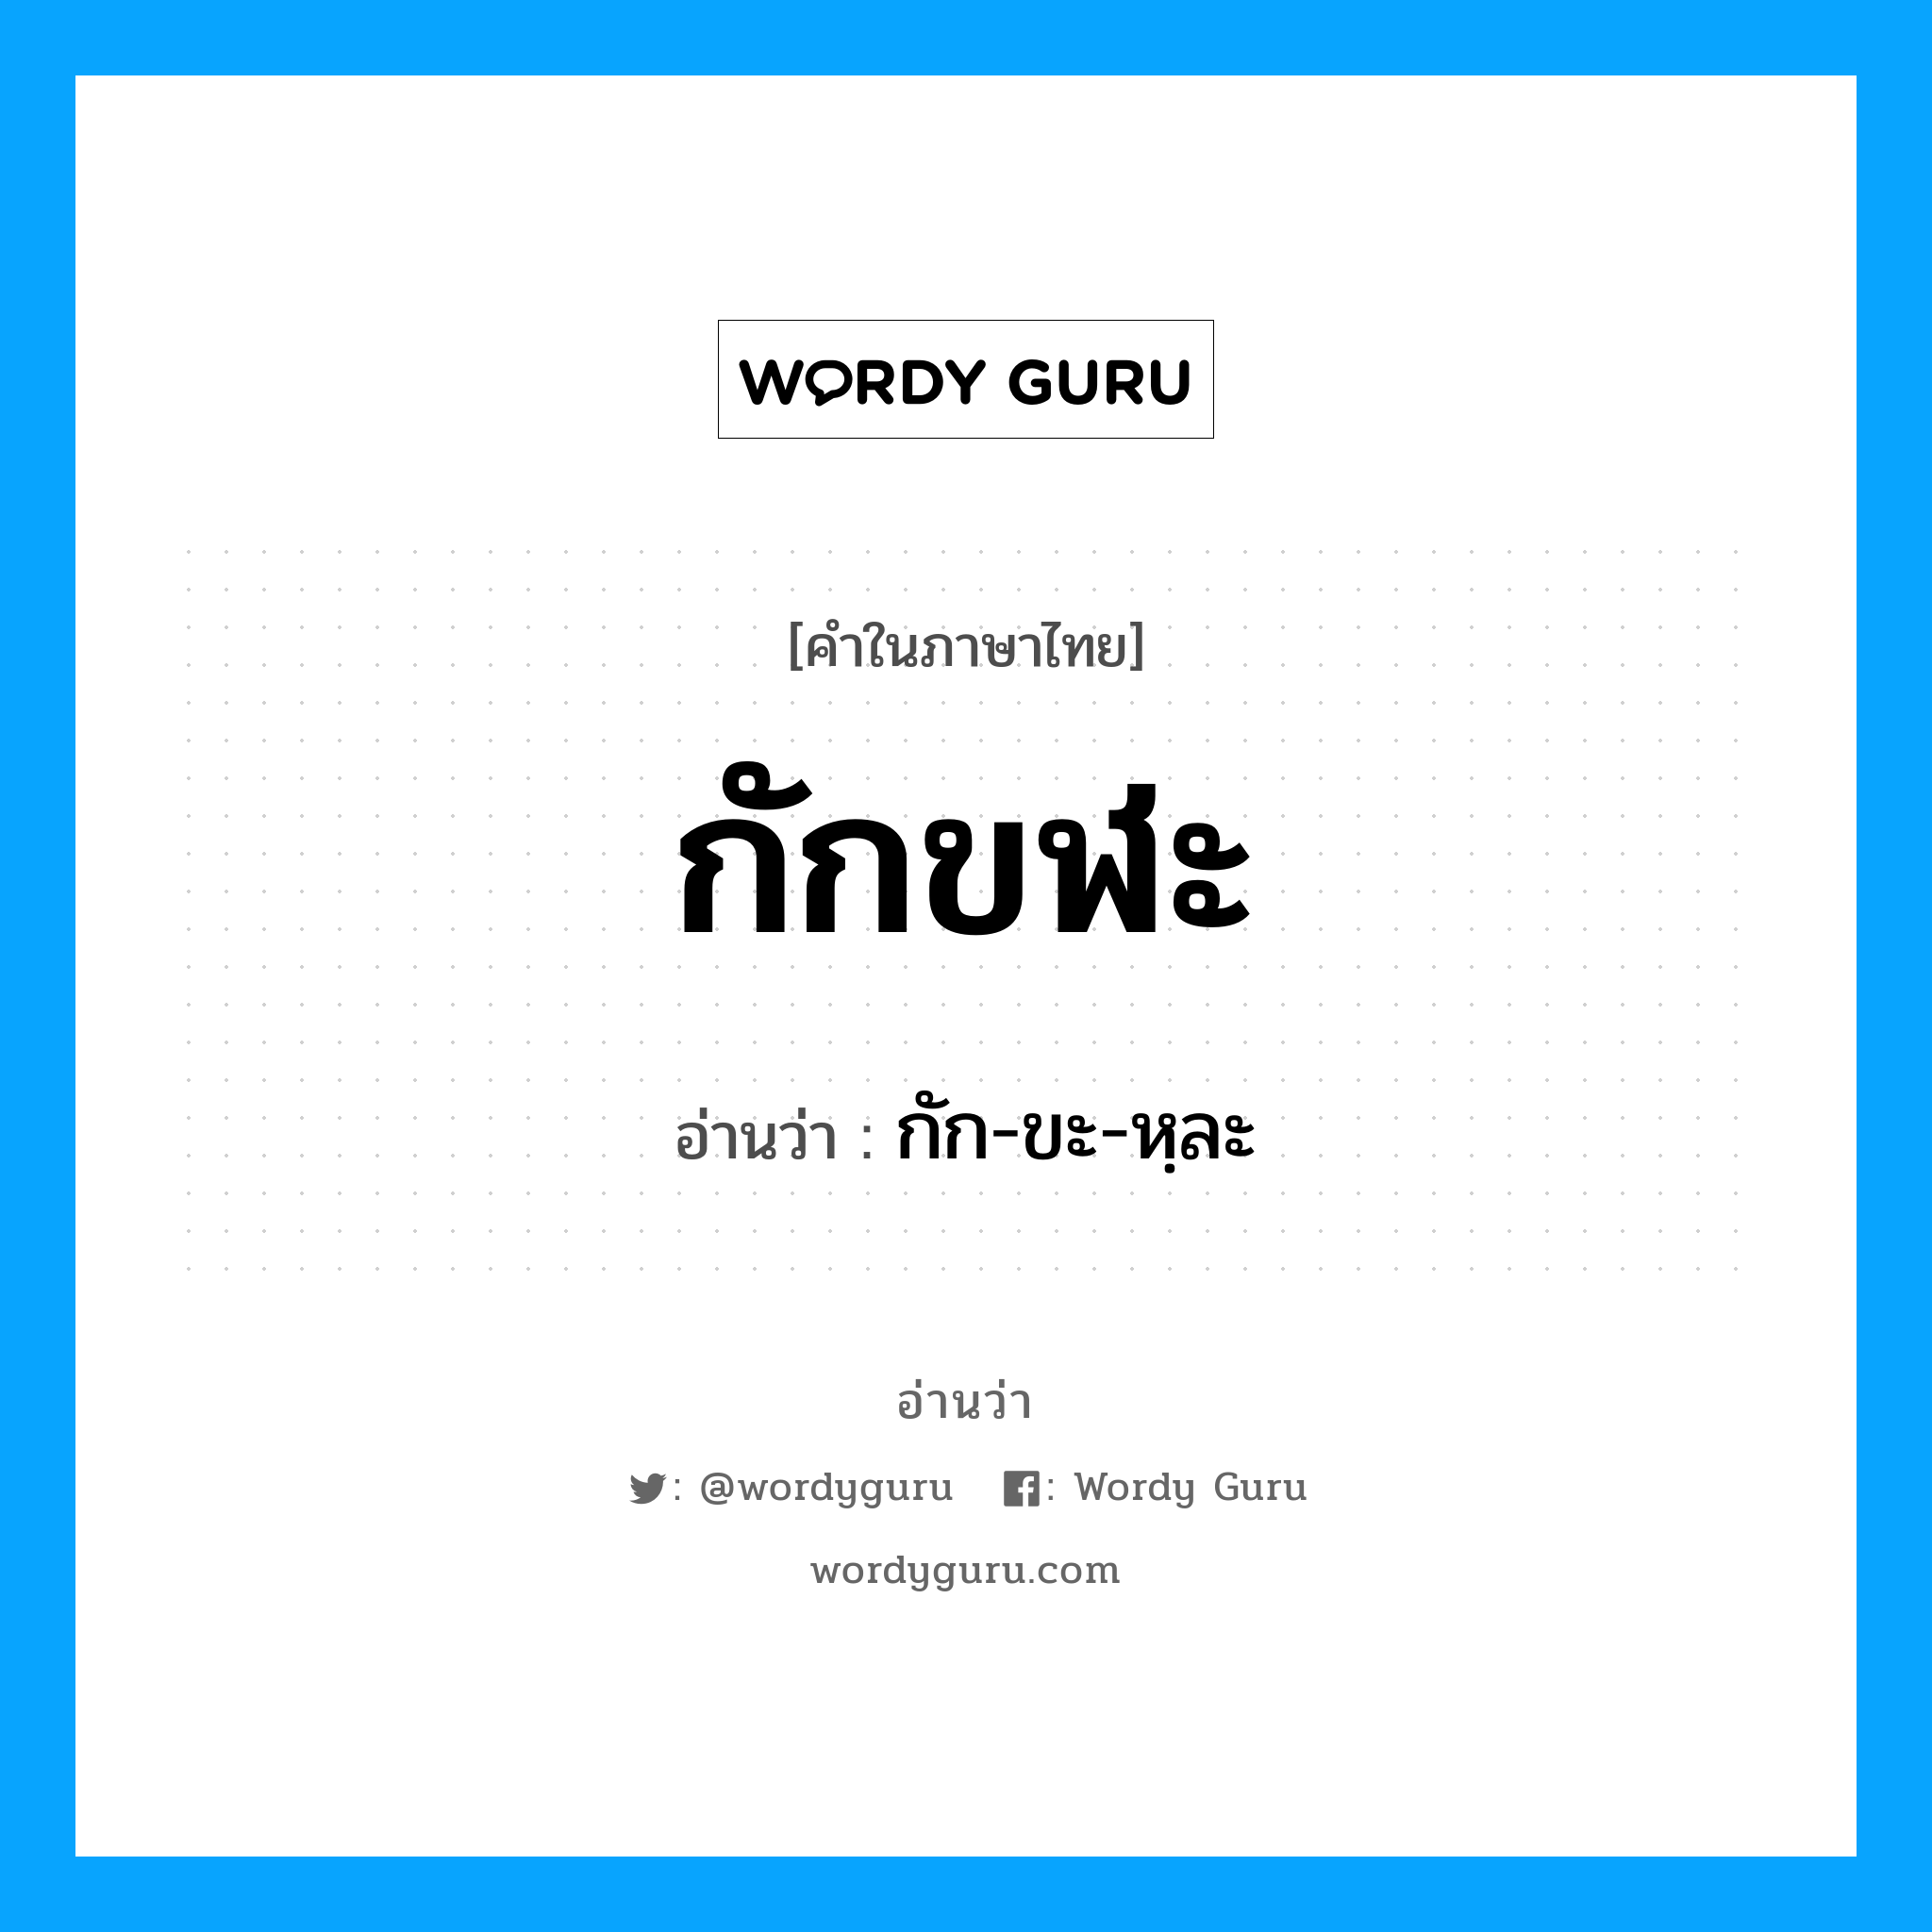 กัก-ขะ-หฺละ เป็นคำอ่านของคำไหน?, คำในภาษาไทย กัก-ขะ-หฺละ อ่านว่า กักขฬะ